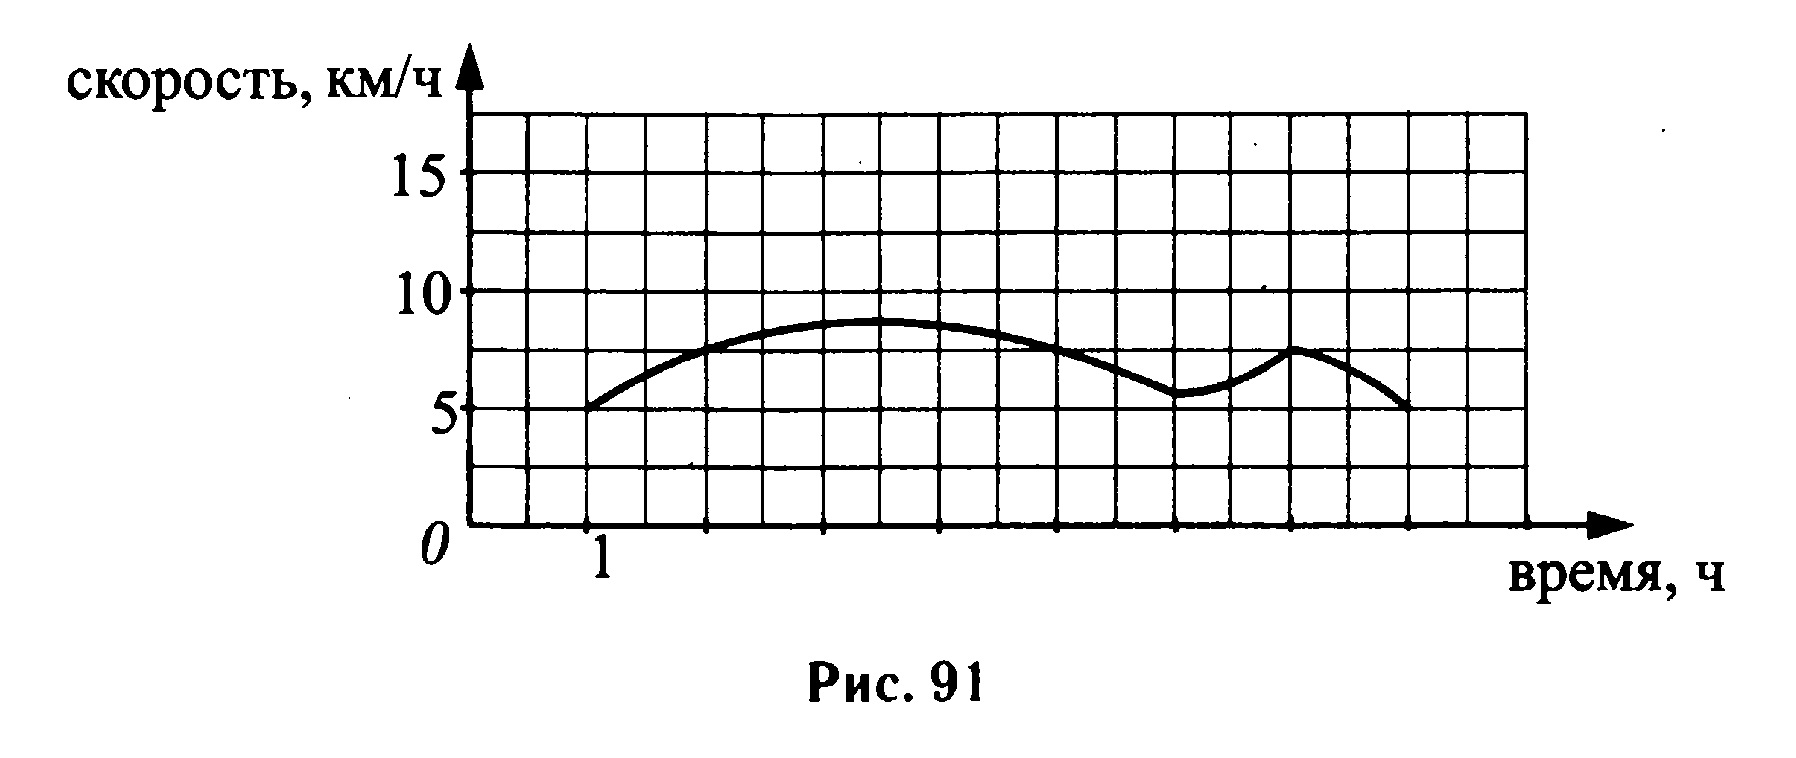 На графике изображено зависимости частоты пульса гимнаста. На графике изображена зависимость. На графике изображено завтсисрсть крутящего помента. На рисунке изображена зависимость между риском и. График скорость качество.